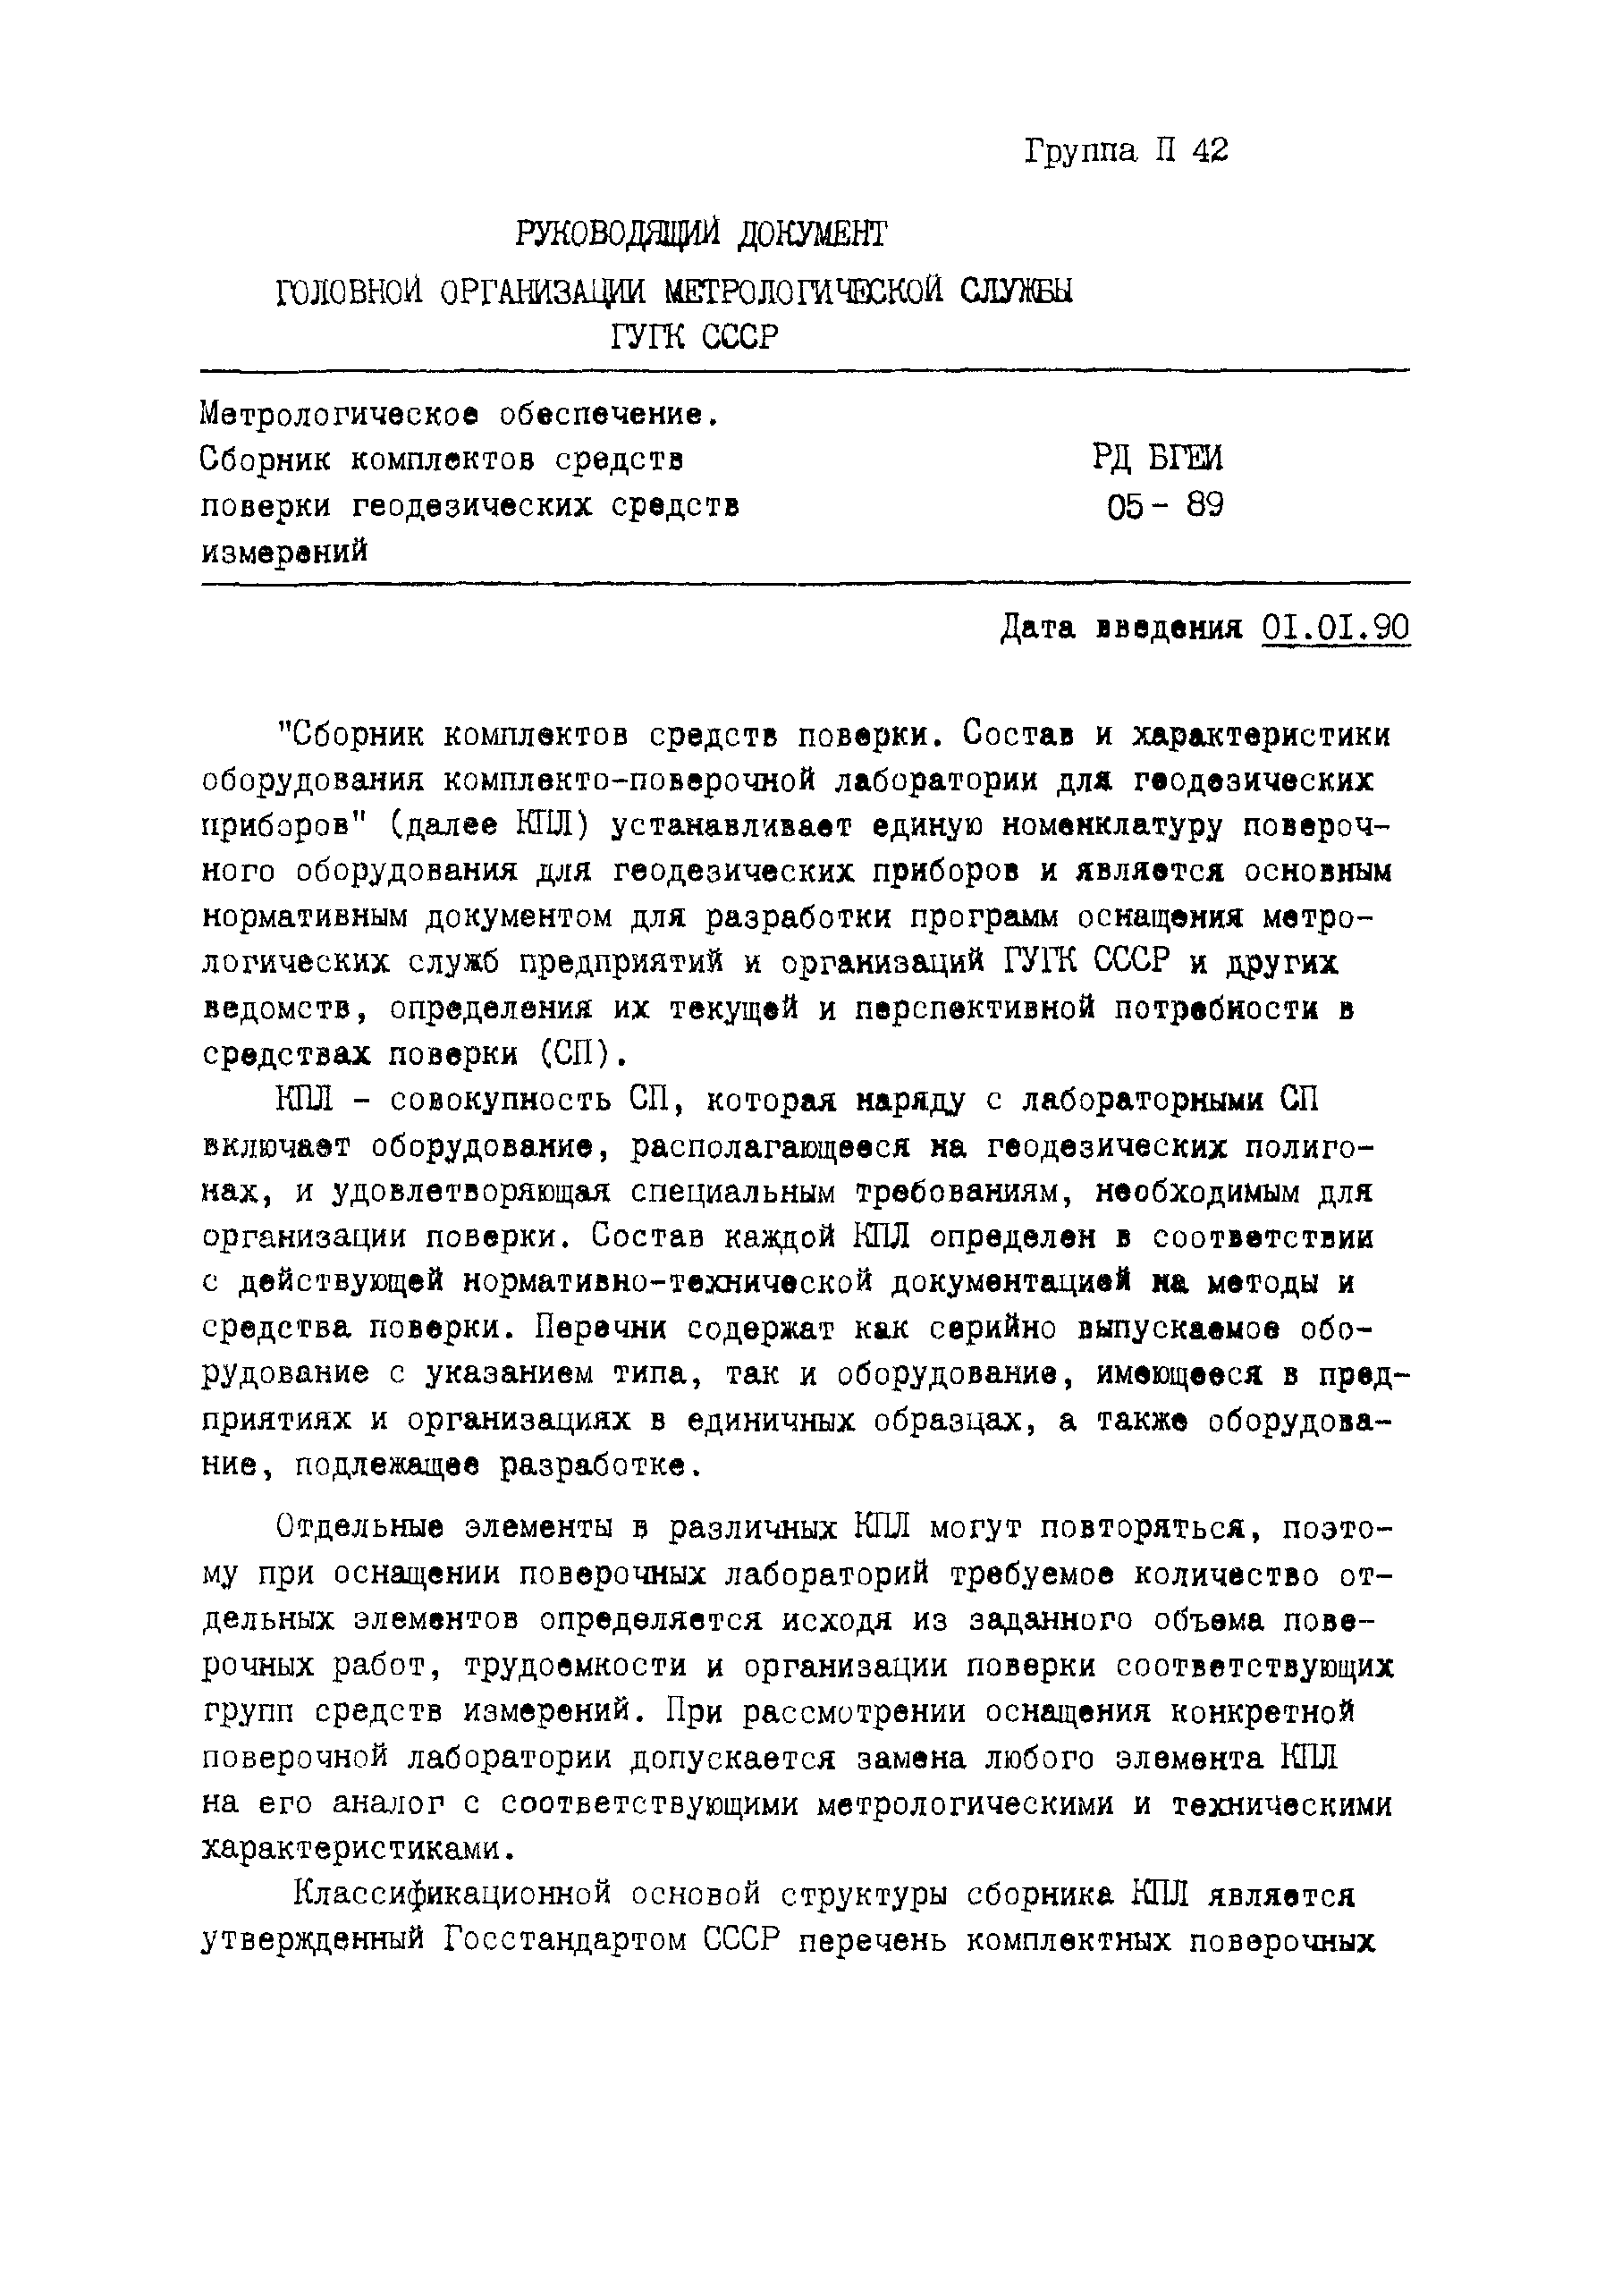 РД БГЕИ 05-89